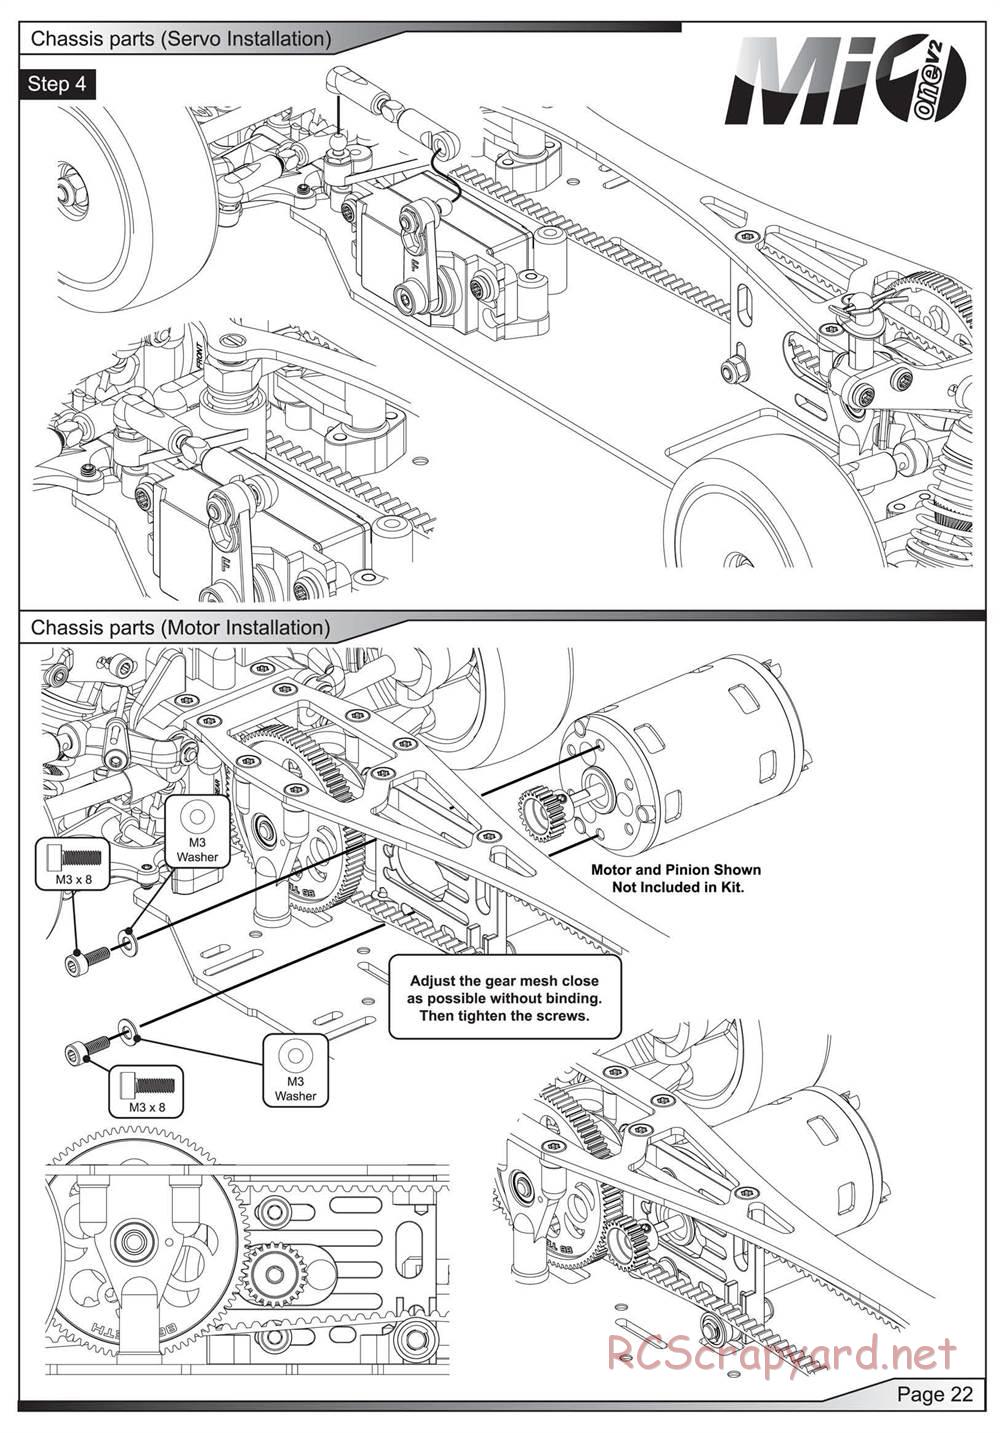 Schumacher - Mi1v2 - Manual - Page 23